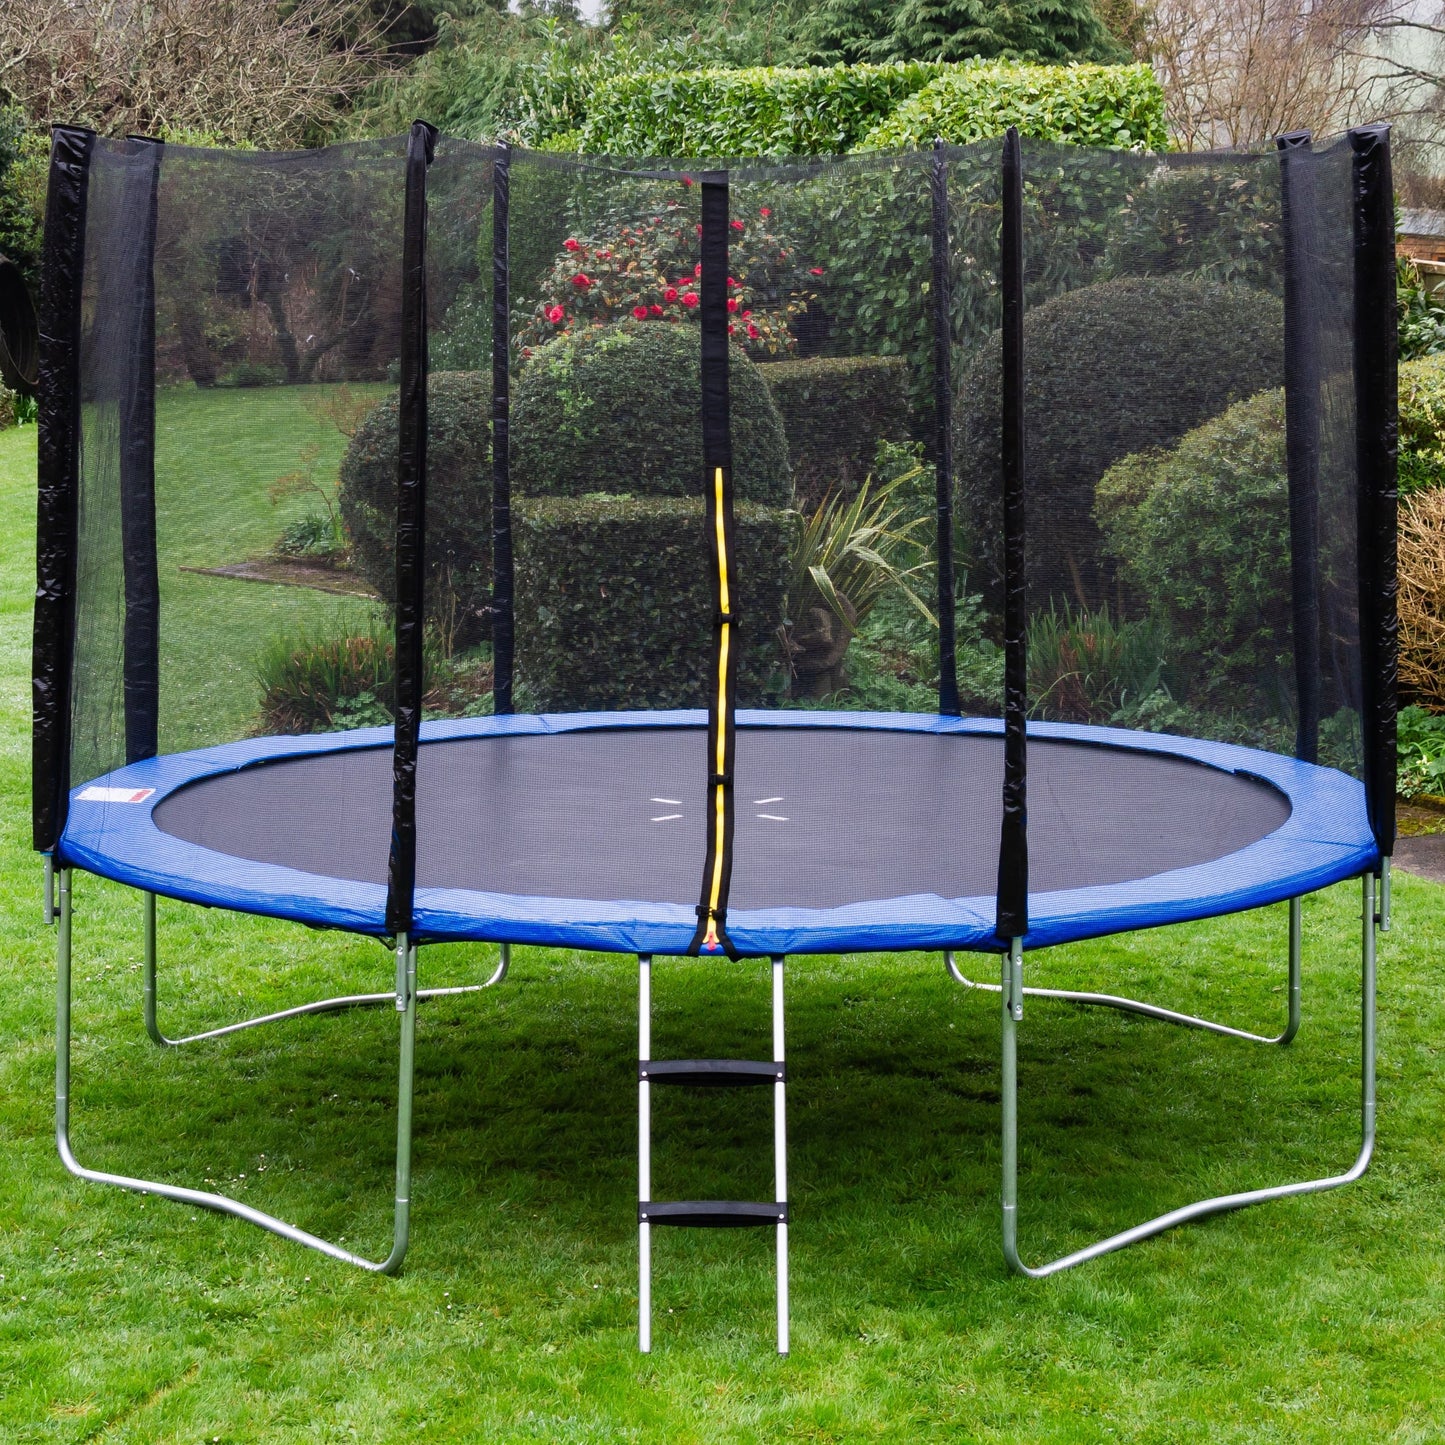 Acrobat 16ft trampoline package